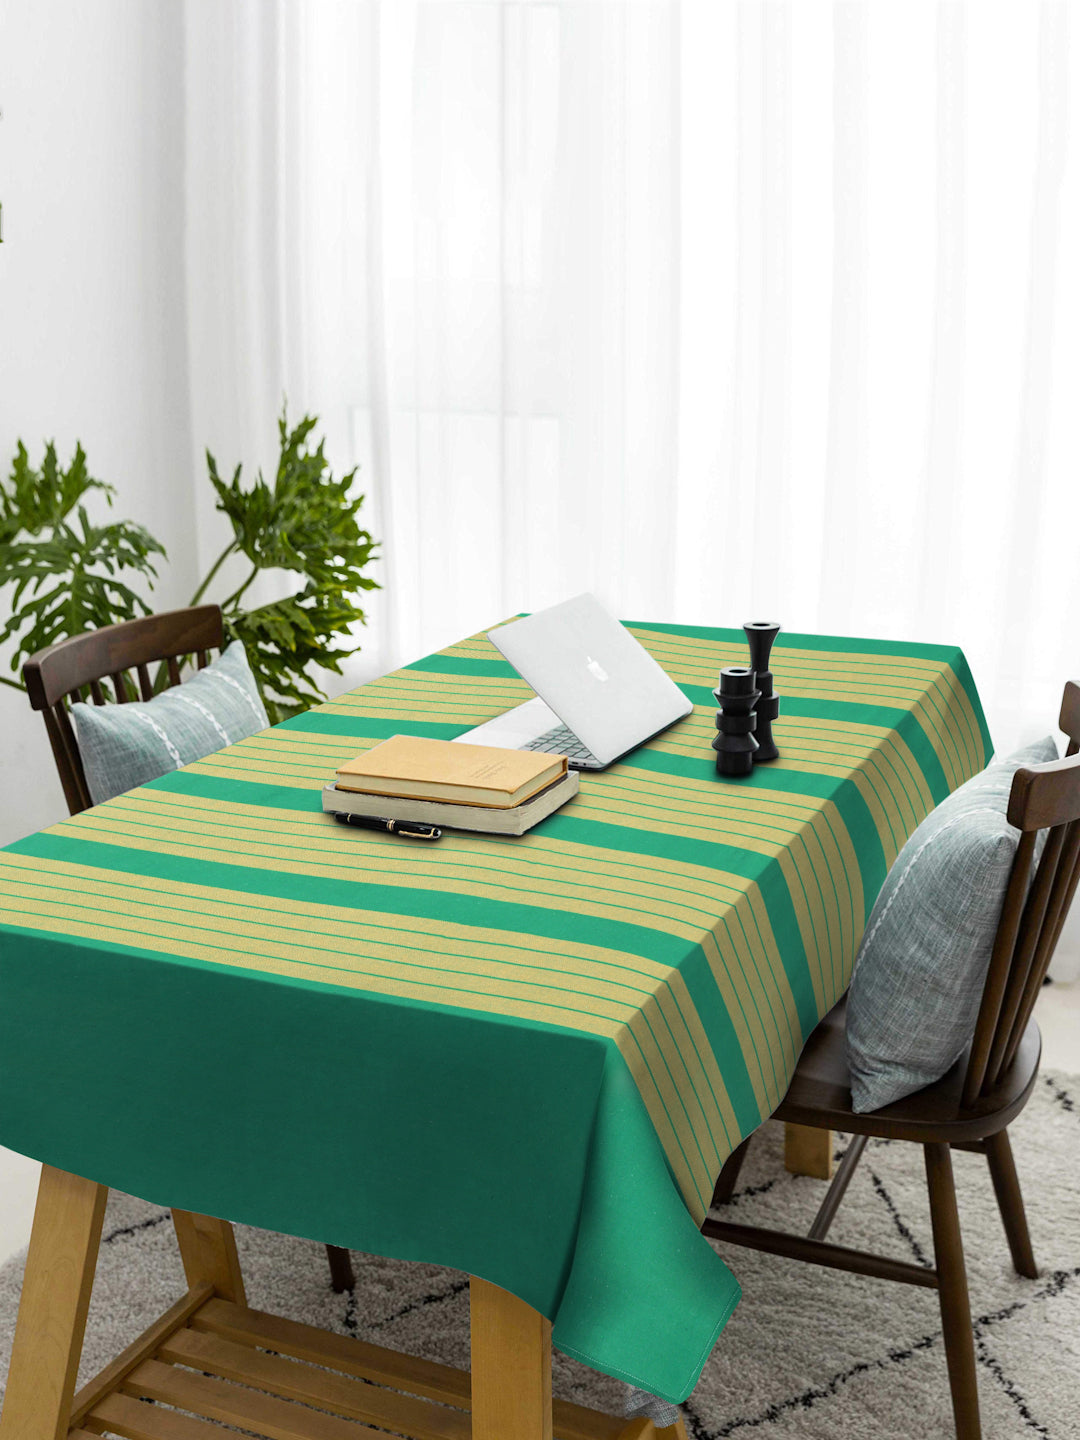 Klotthe Green Woven Design 6 Seater Rectangular Table Cover